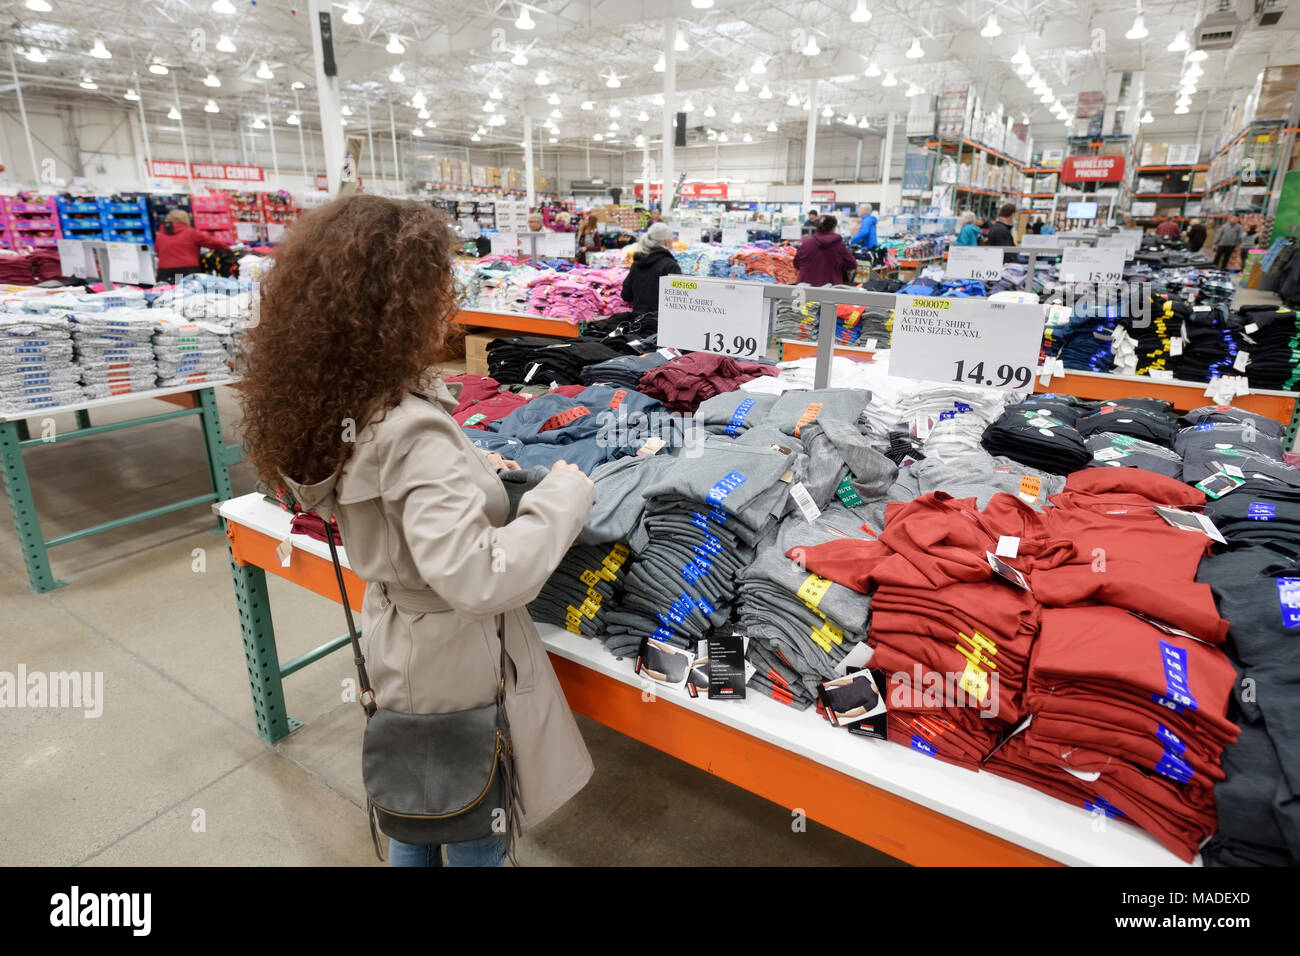 Mujer recogiendo una camiseta en Costco Wholesale Warehouse membresía Almacenar la sección de ropa para hombres. Columbia Británica, Canadá 2017. Foto de stock